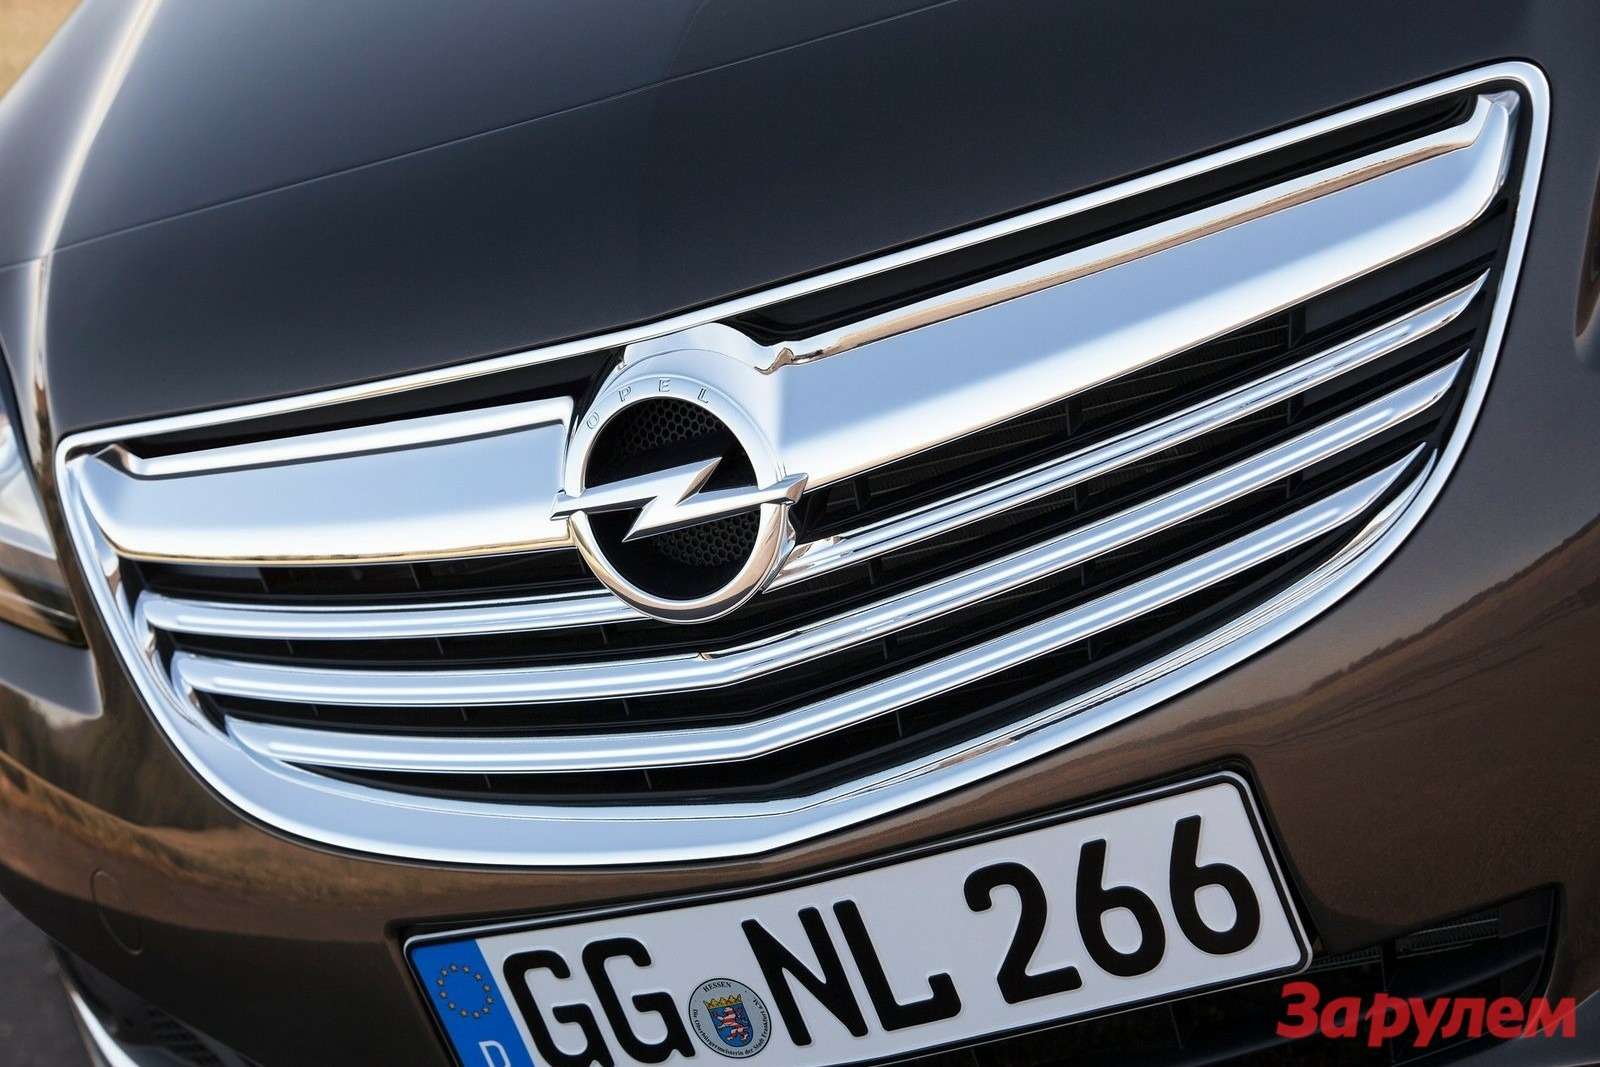 Opel Insignia 2014 1600x1200 wallpaper 0e